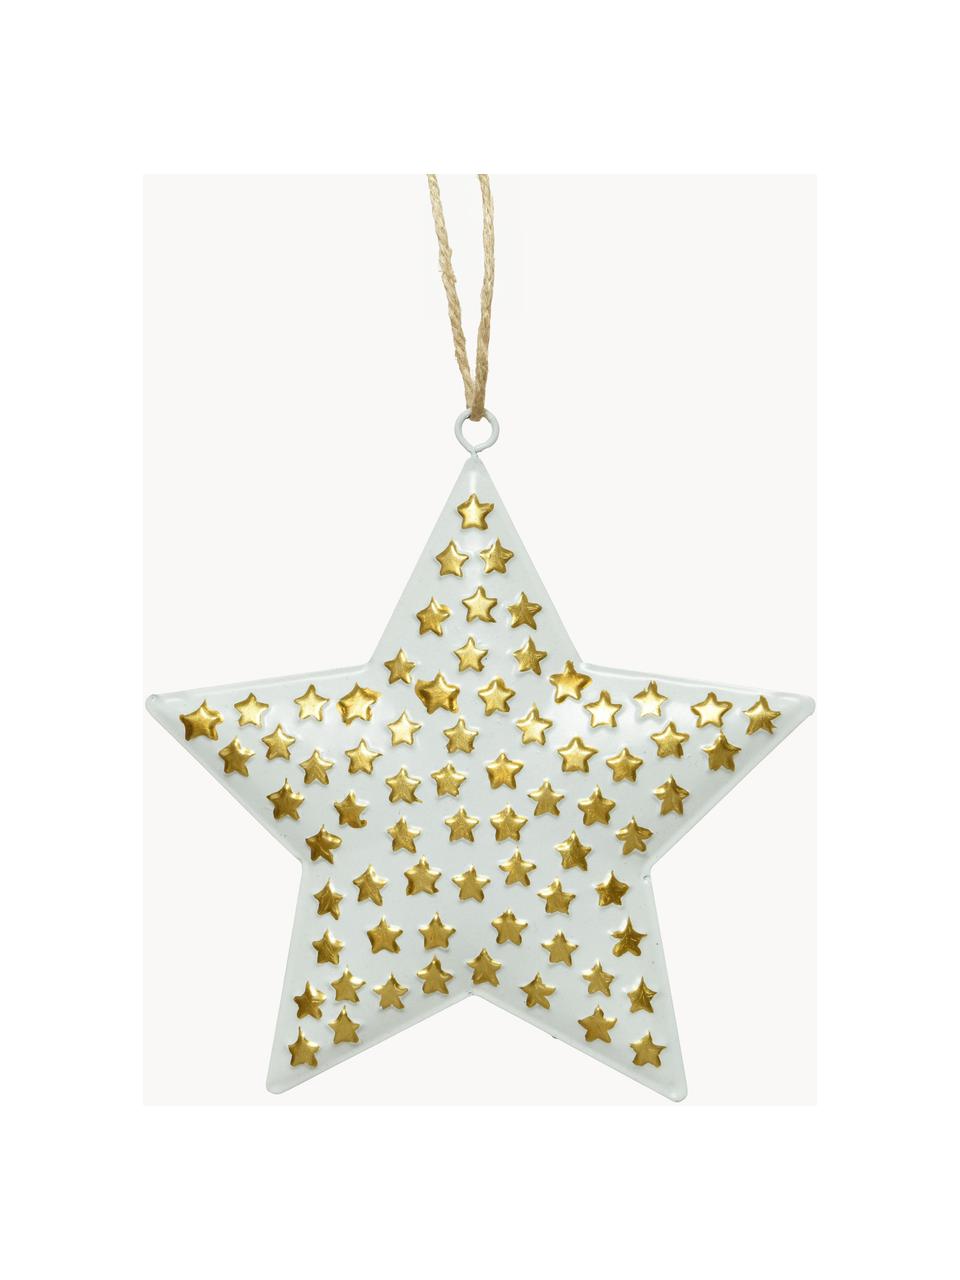 Adornos para colgar estrellas Million Stars, 4 uds., Metal recubierto, Blanco, dorado, An 13 x Al 13 cm